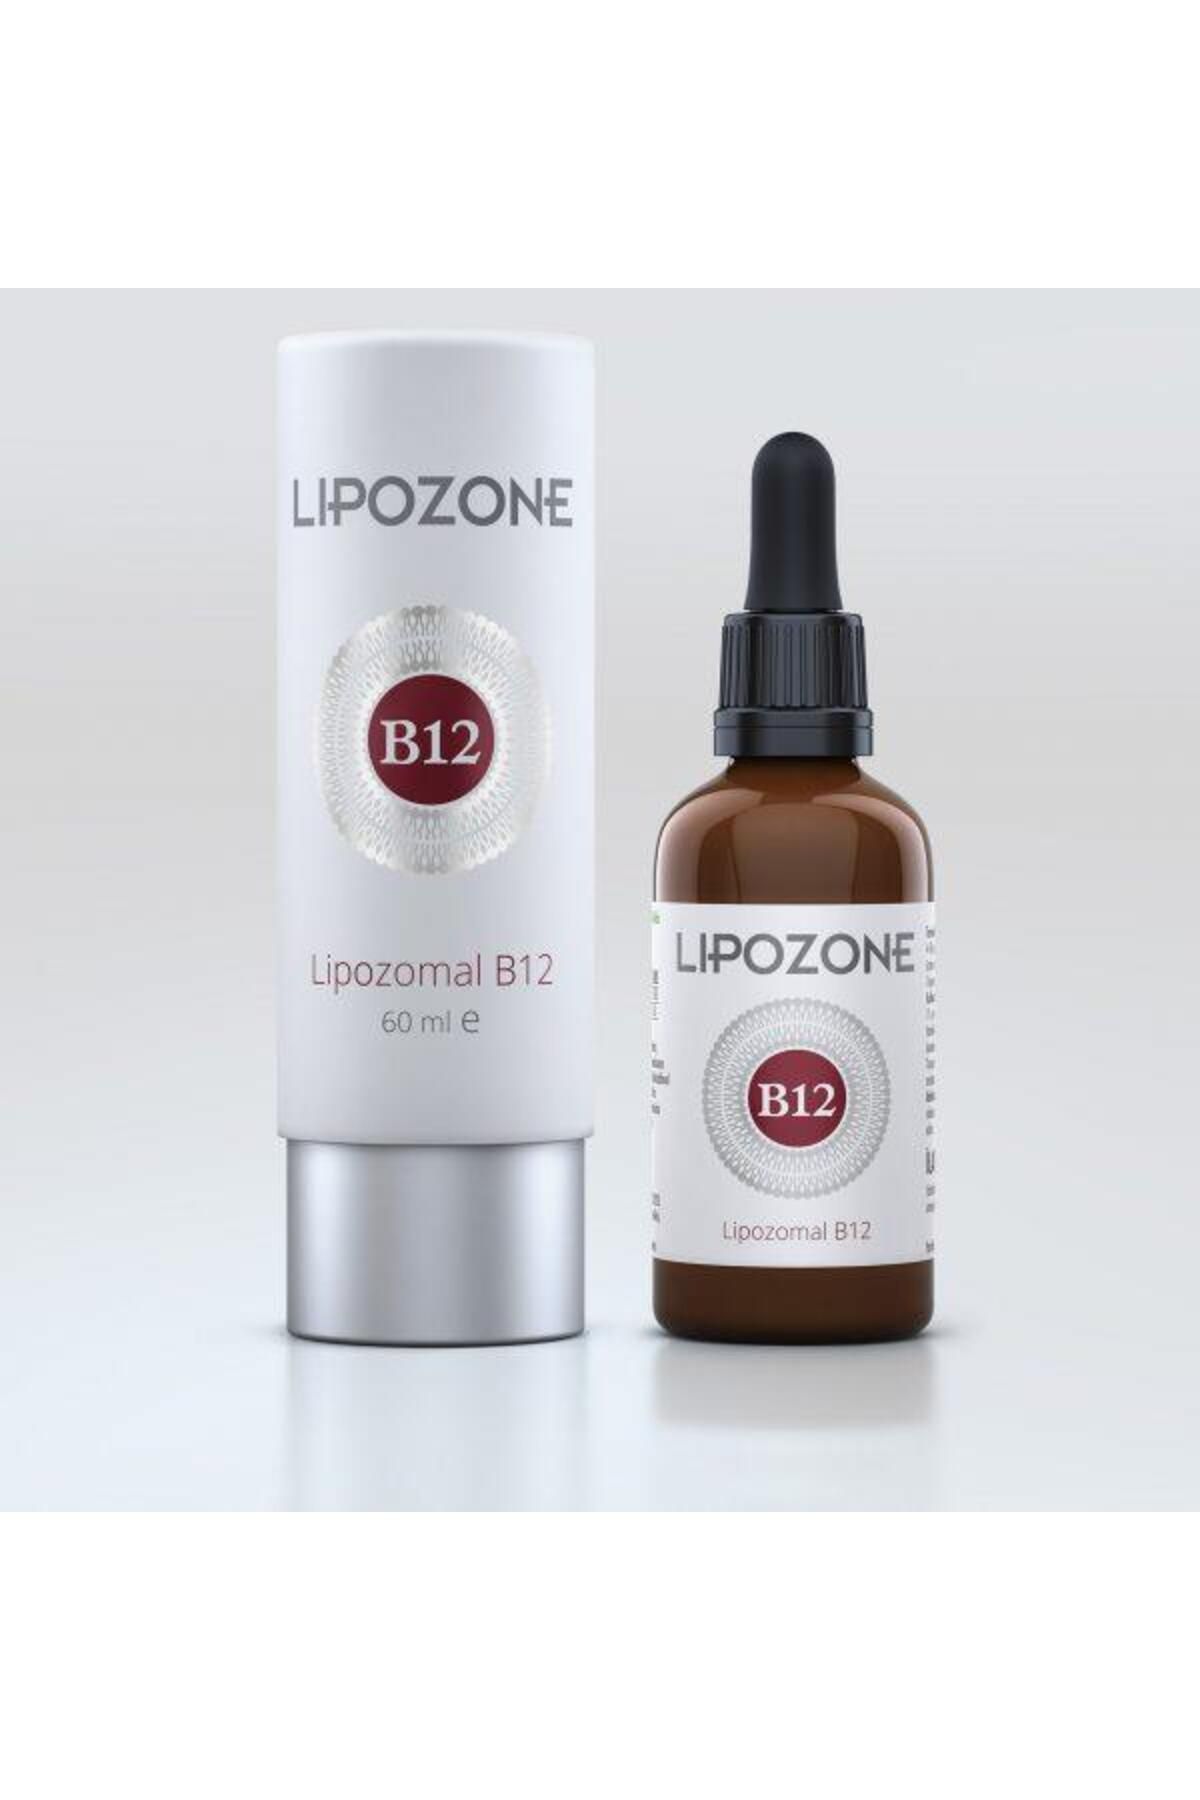 Lipozone Lipozomal Vitamin B12 60 ml